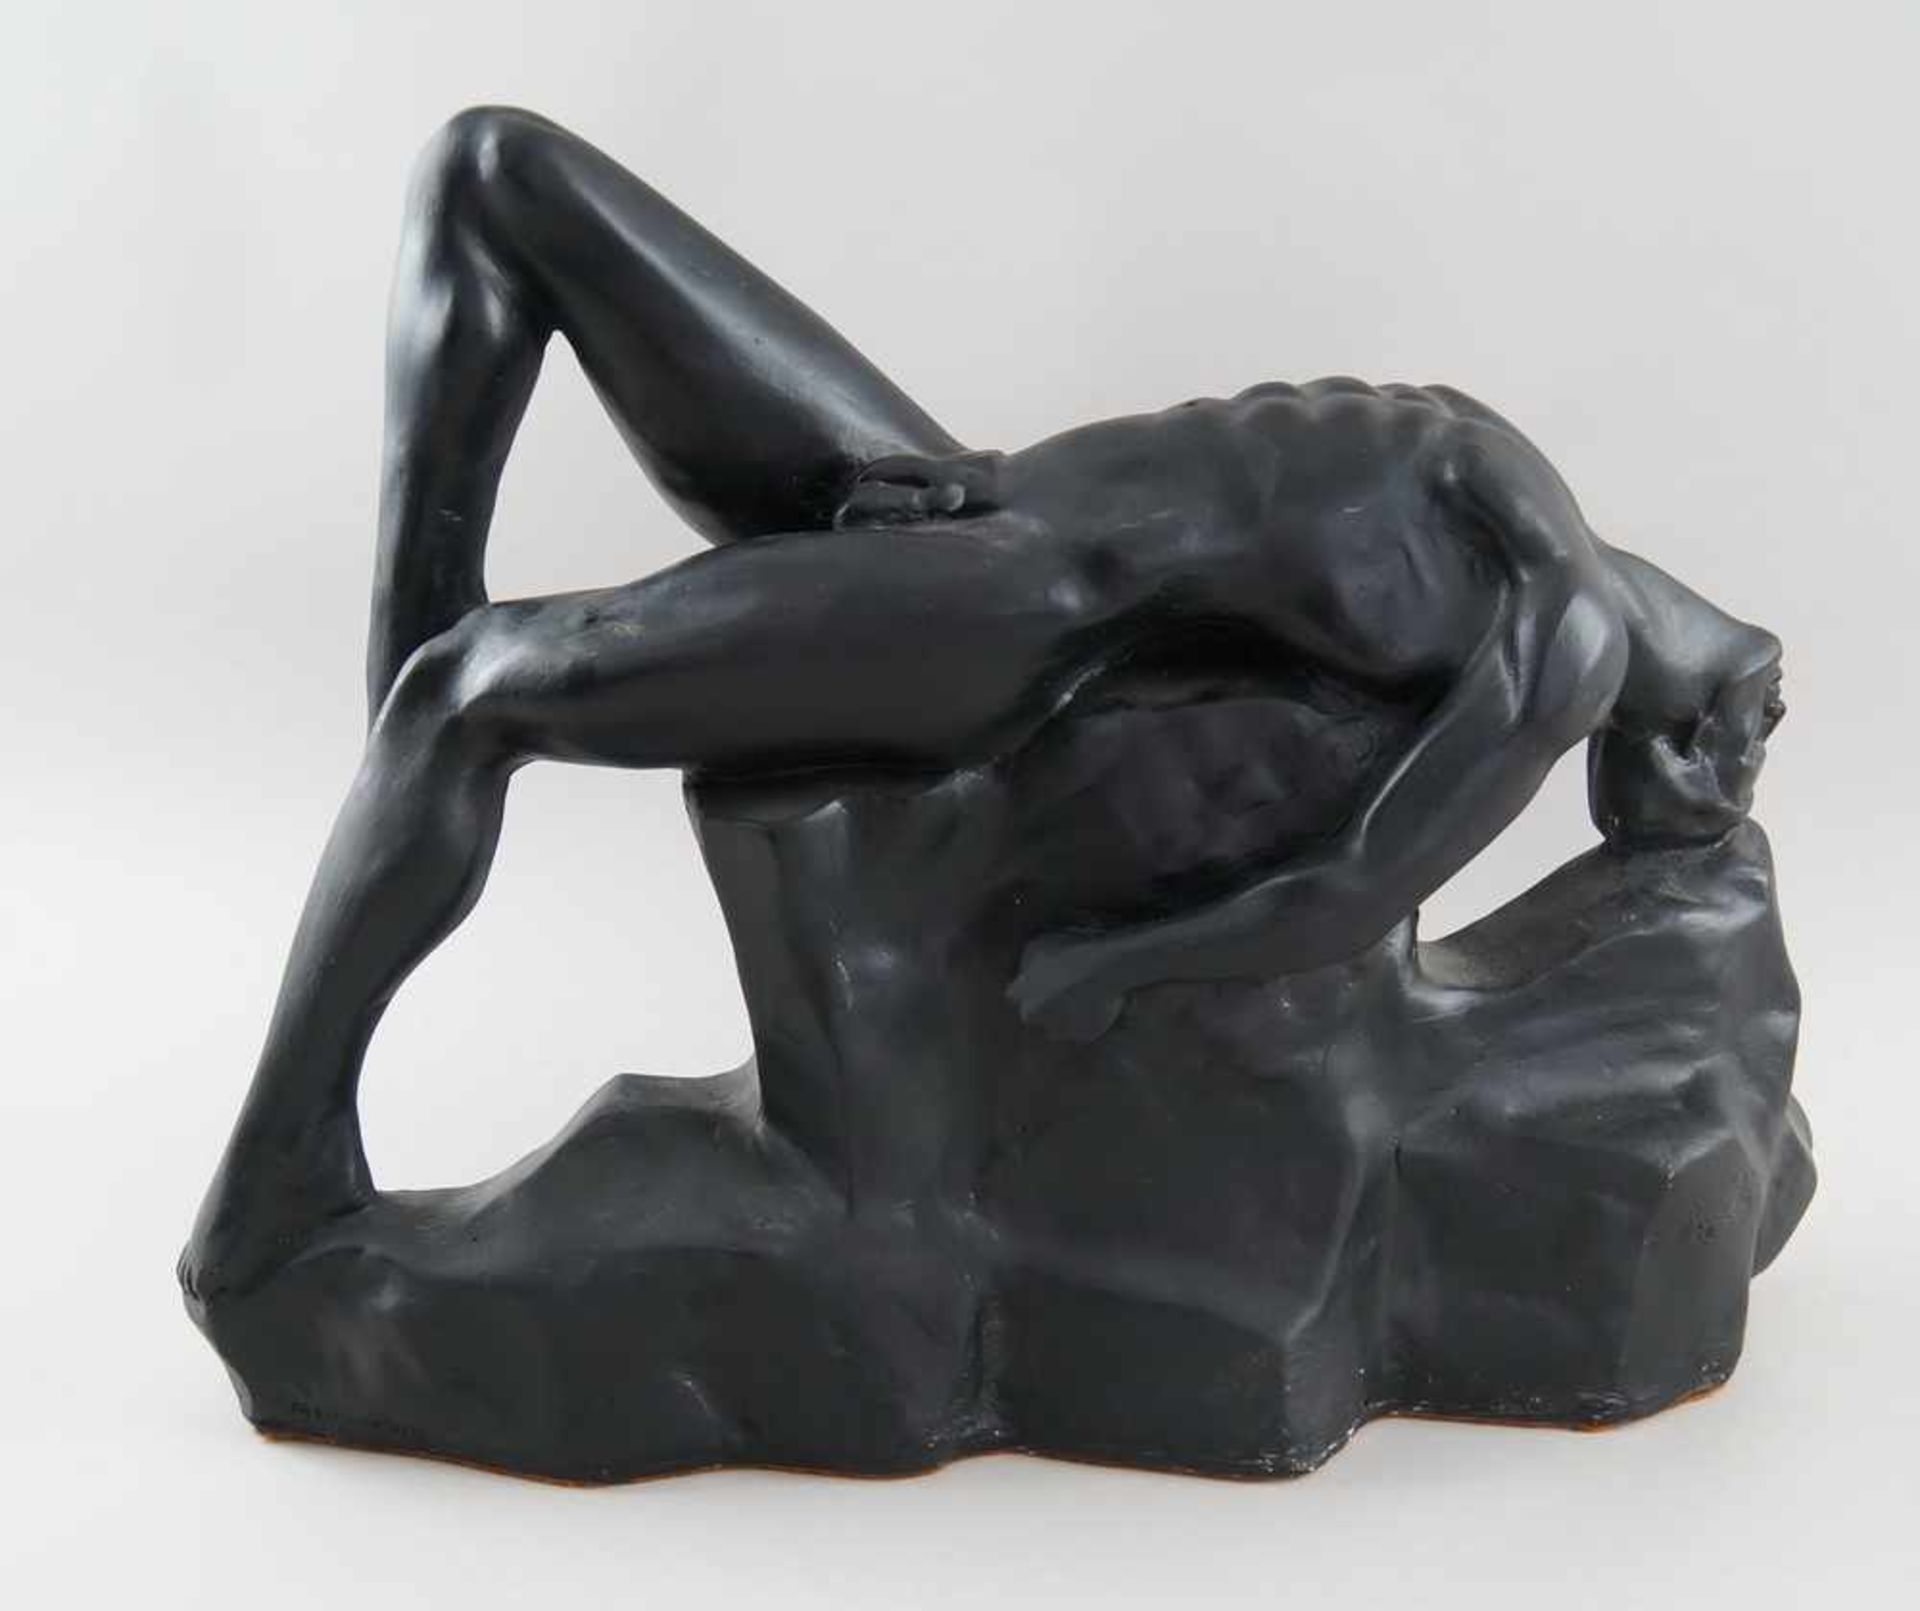 Männlicher Akt in erotischer Pose, modelliertes Material, signiert, L 59 cm